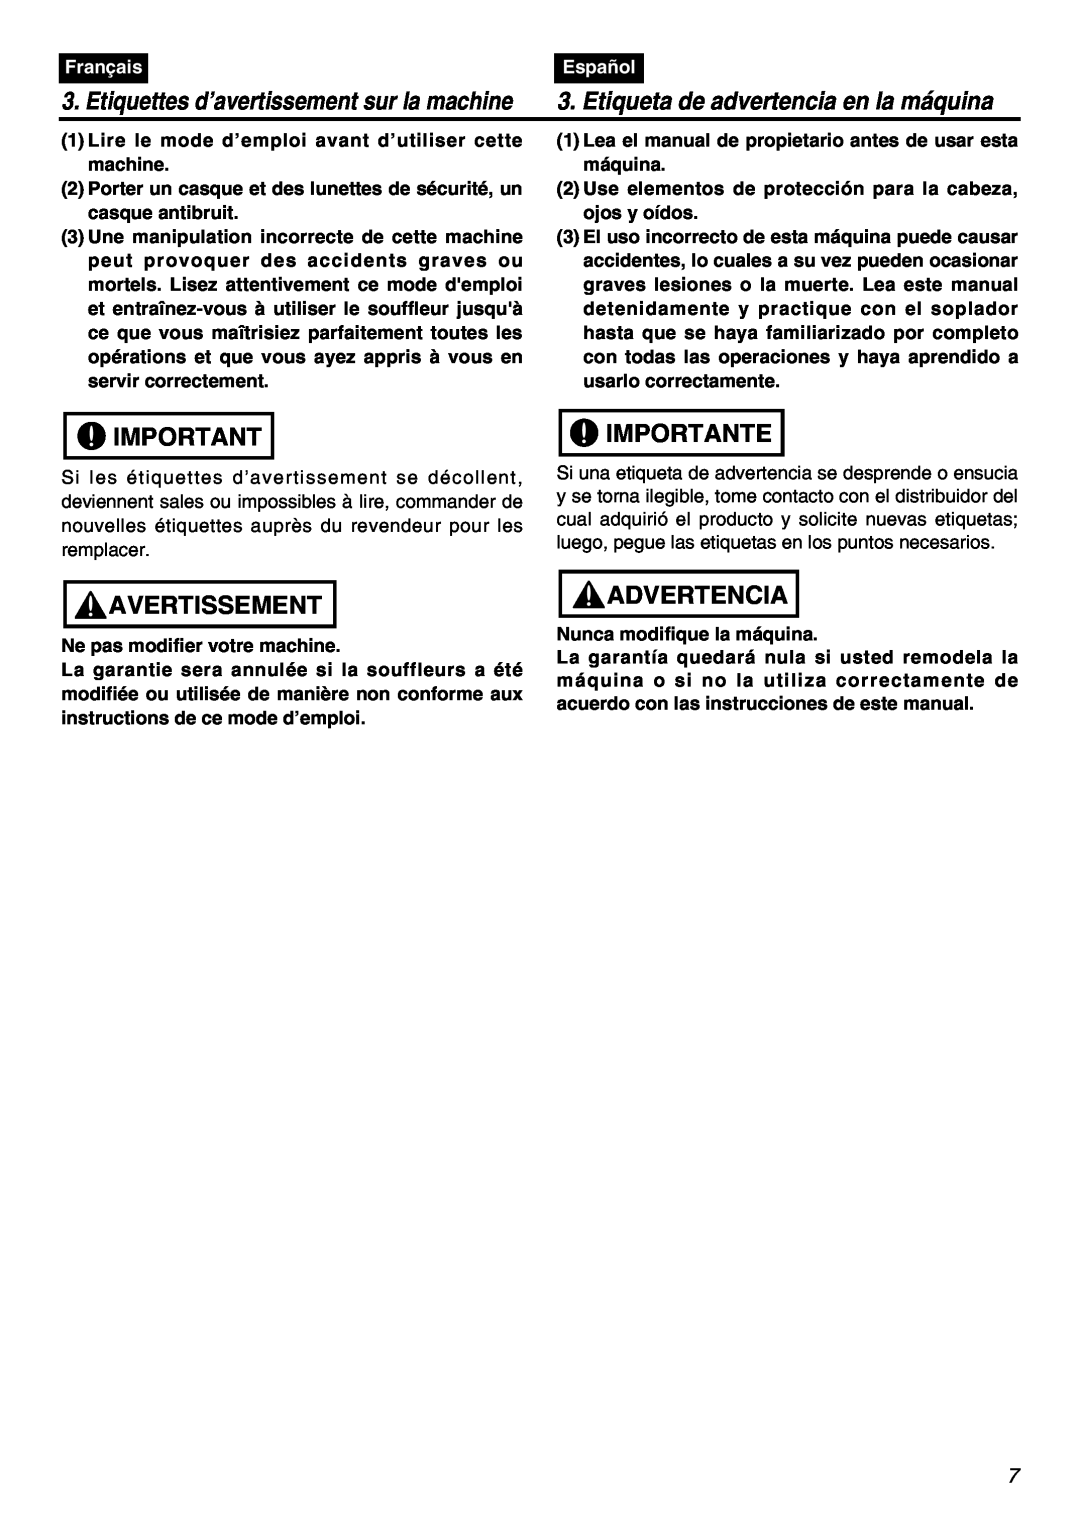 RedMax EBZ7100RH Avertissement, Importante, Advertencia, Etiquettes d’avertissement sur la machine, Français, Español 